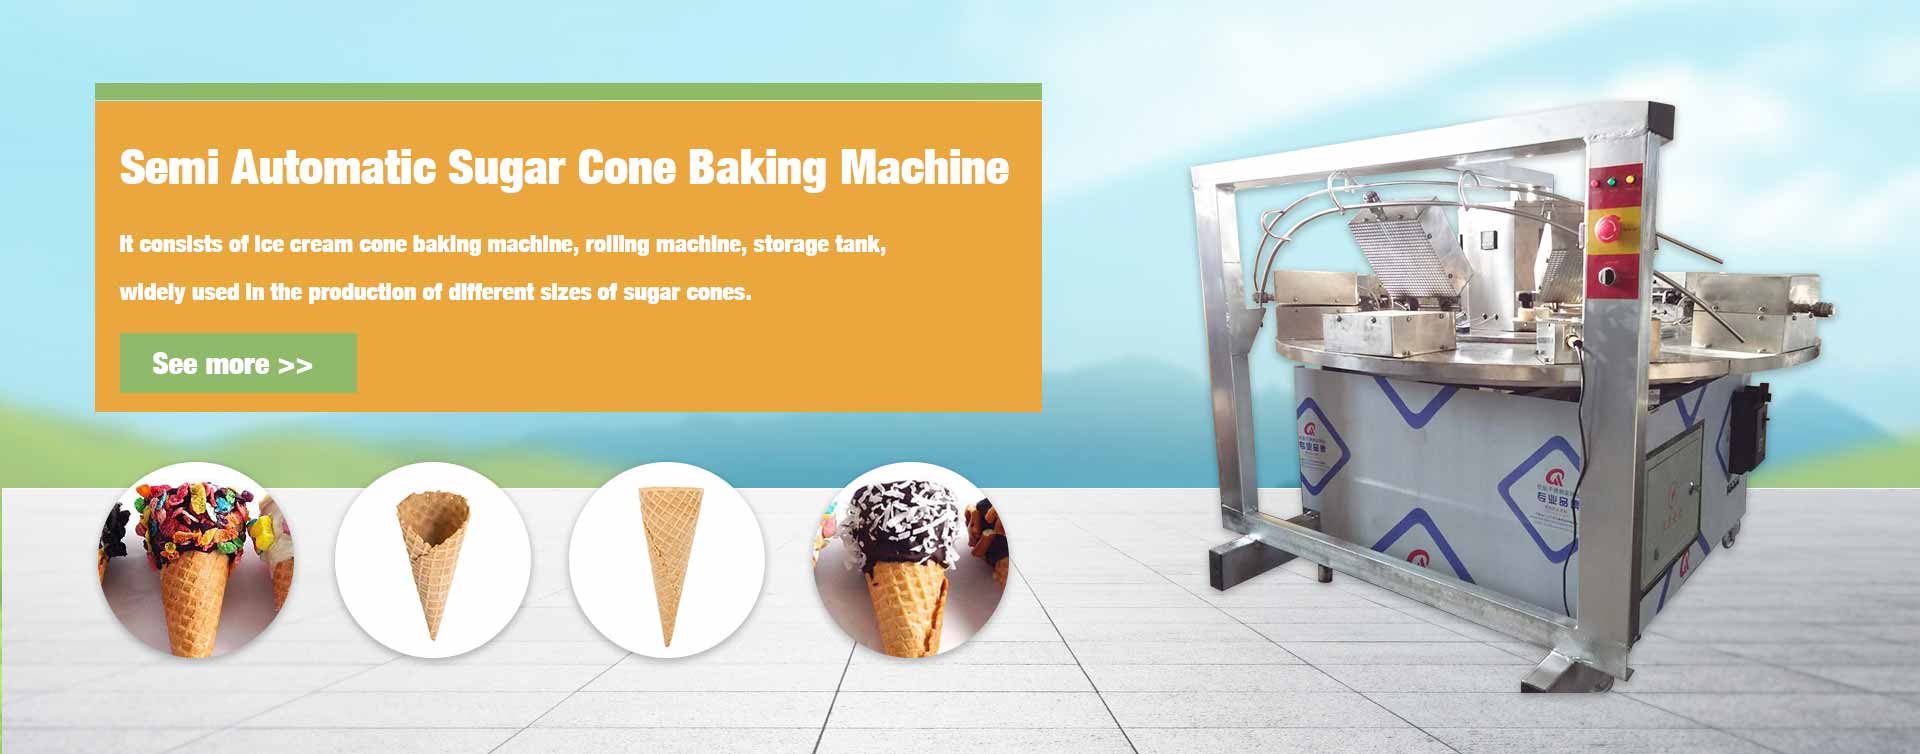 Semi Automatic Sugar Cone Bakin